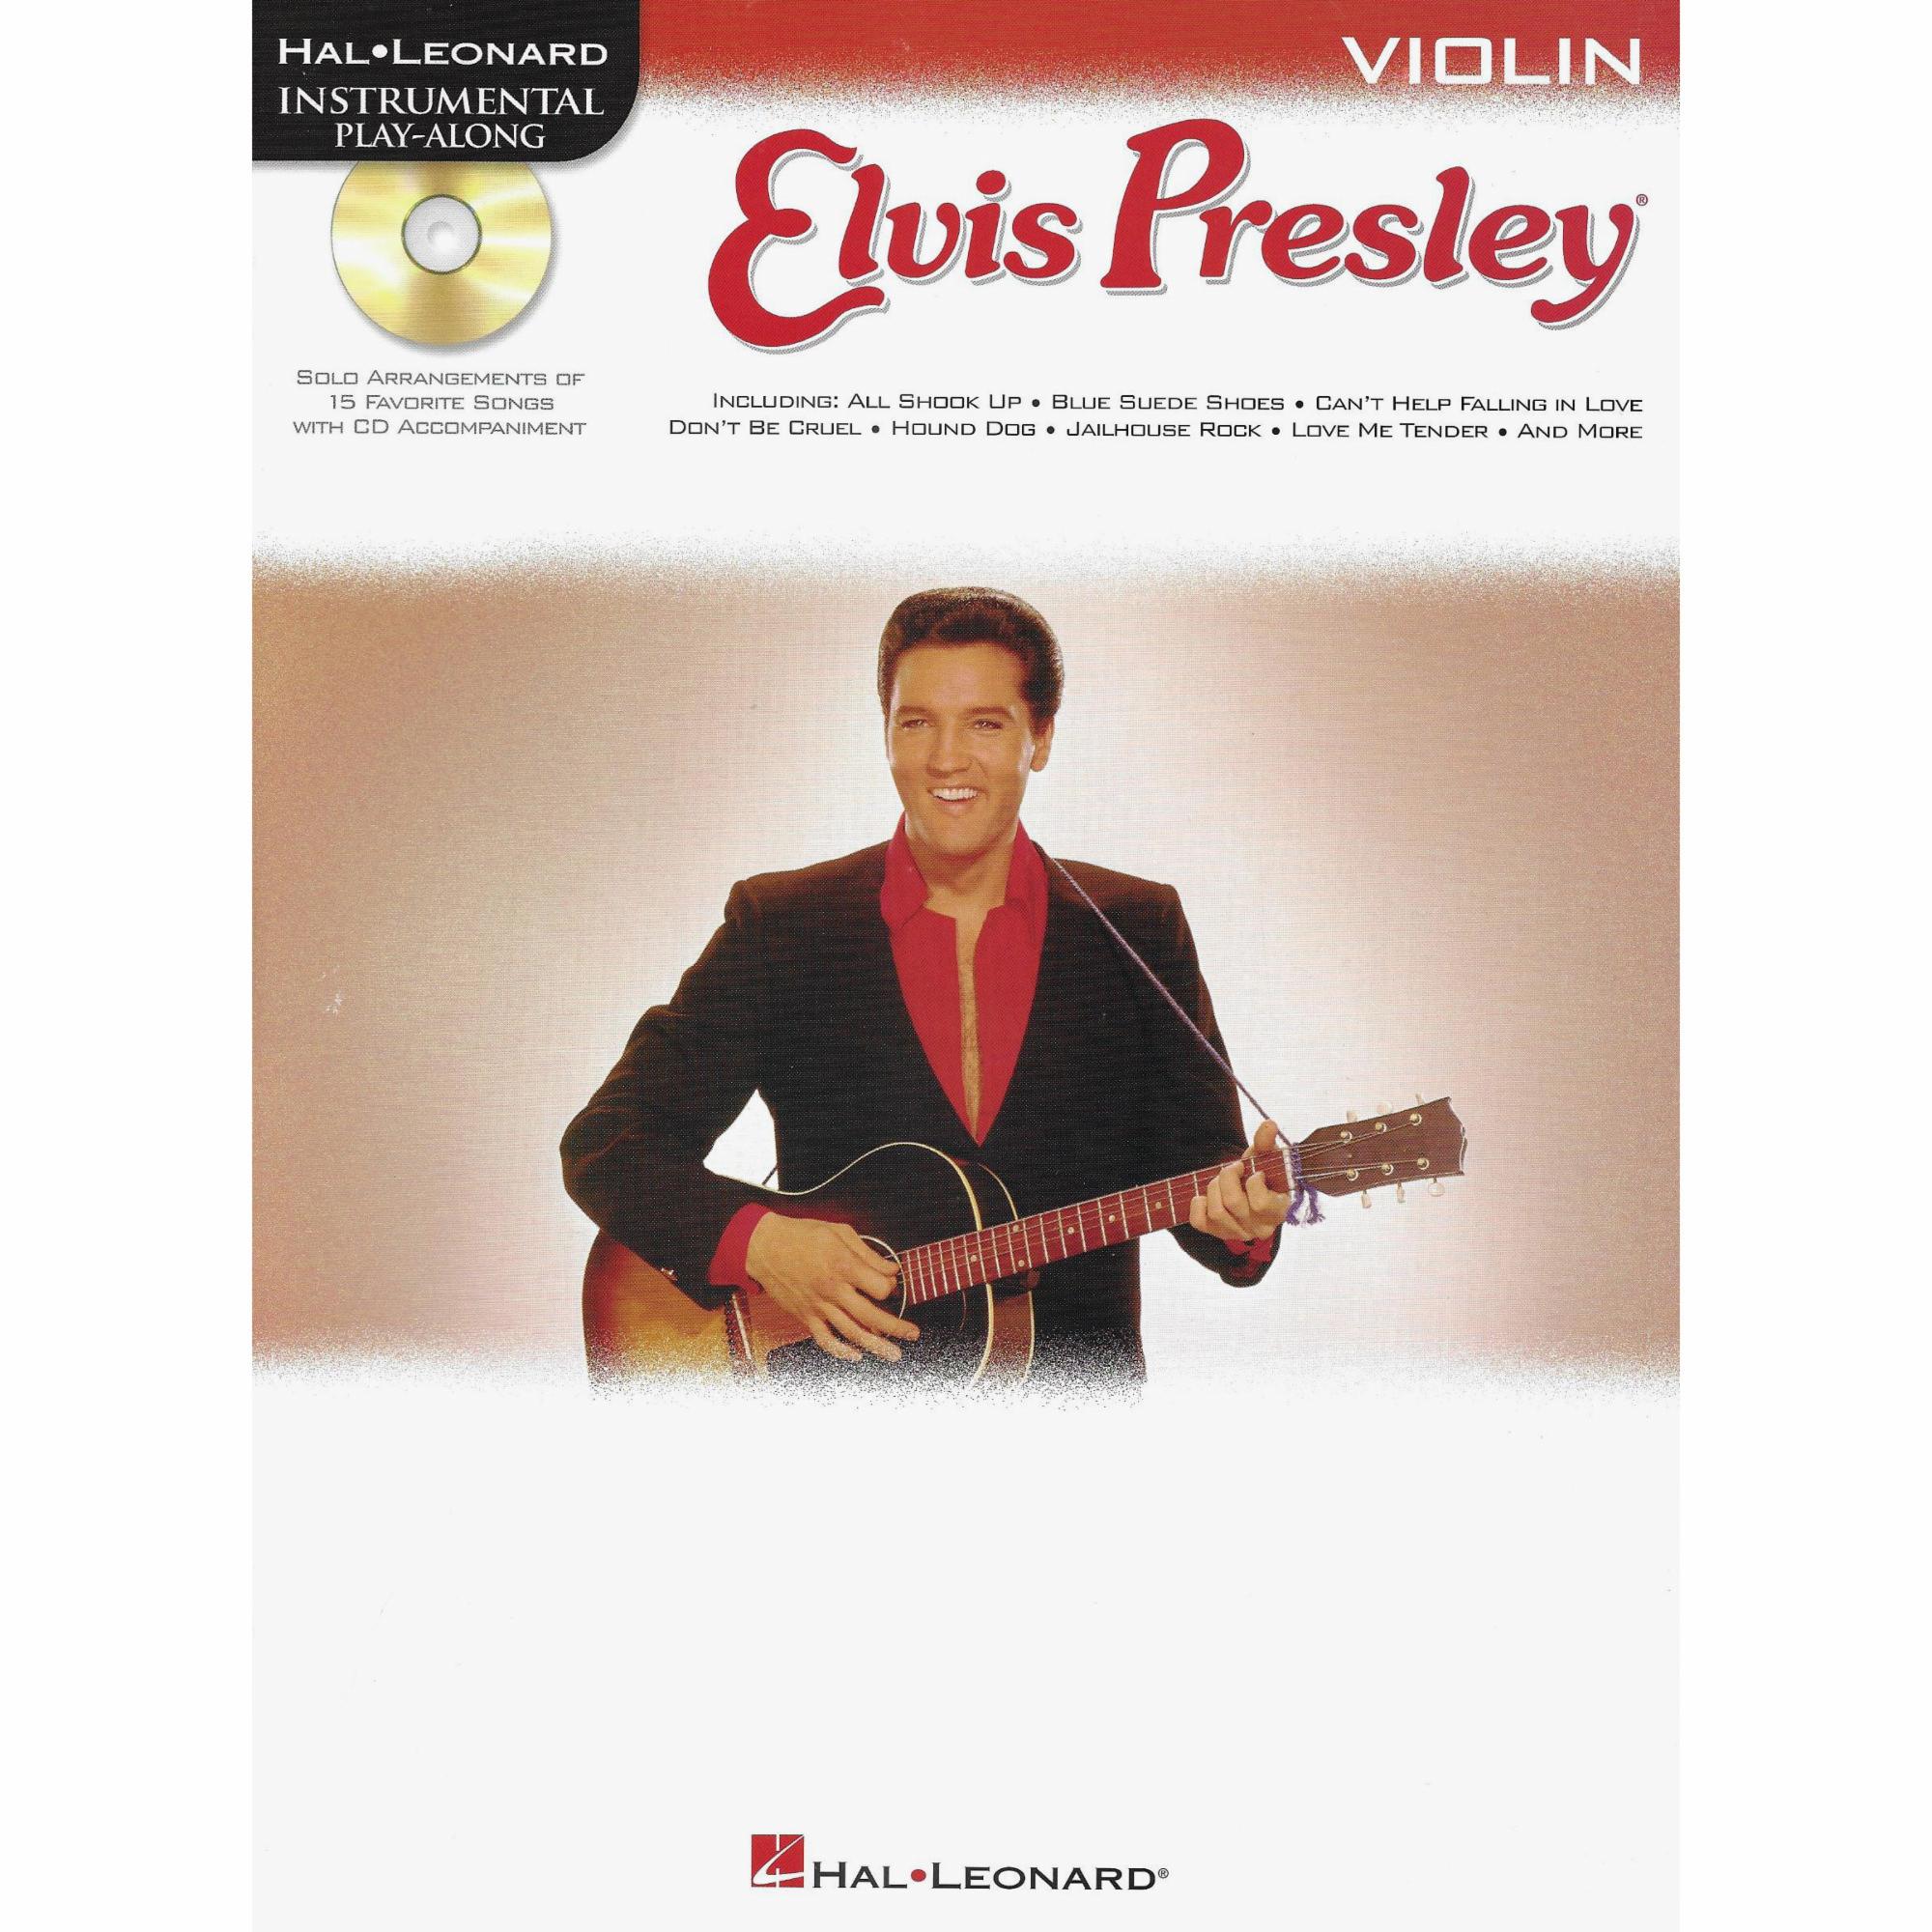 Elvis Presley for Violin, Viola, or Cello